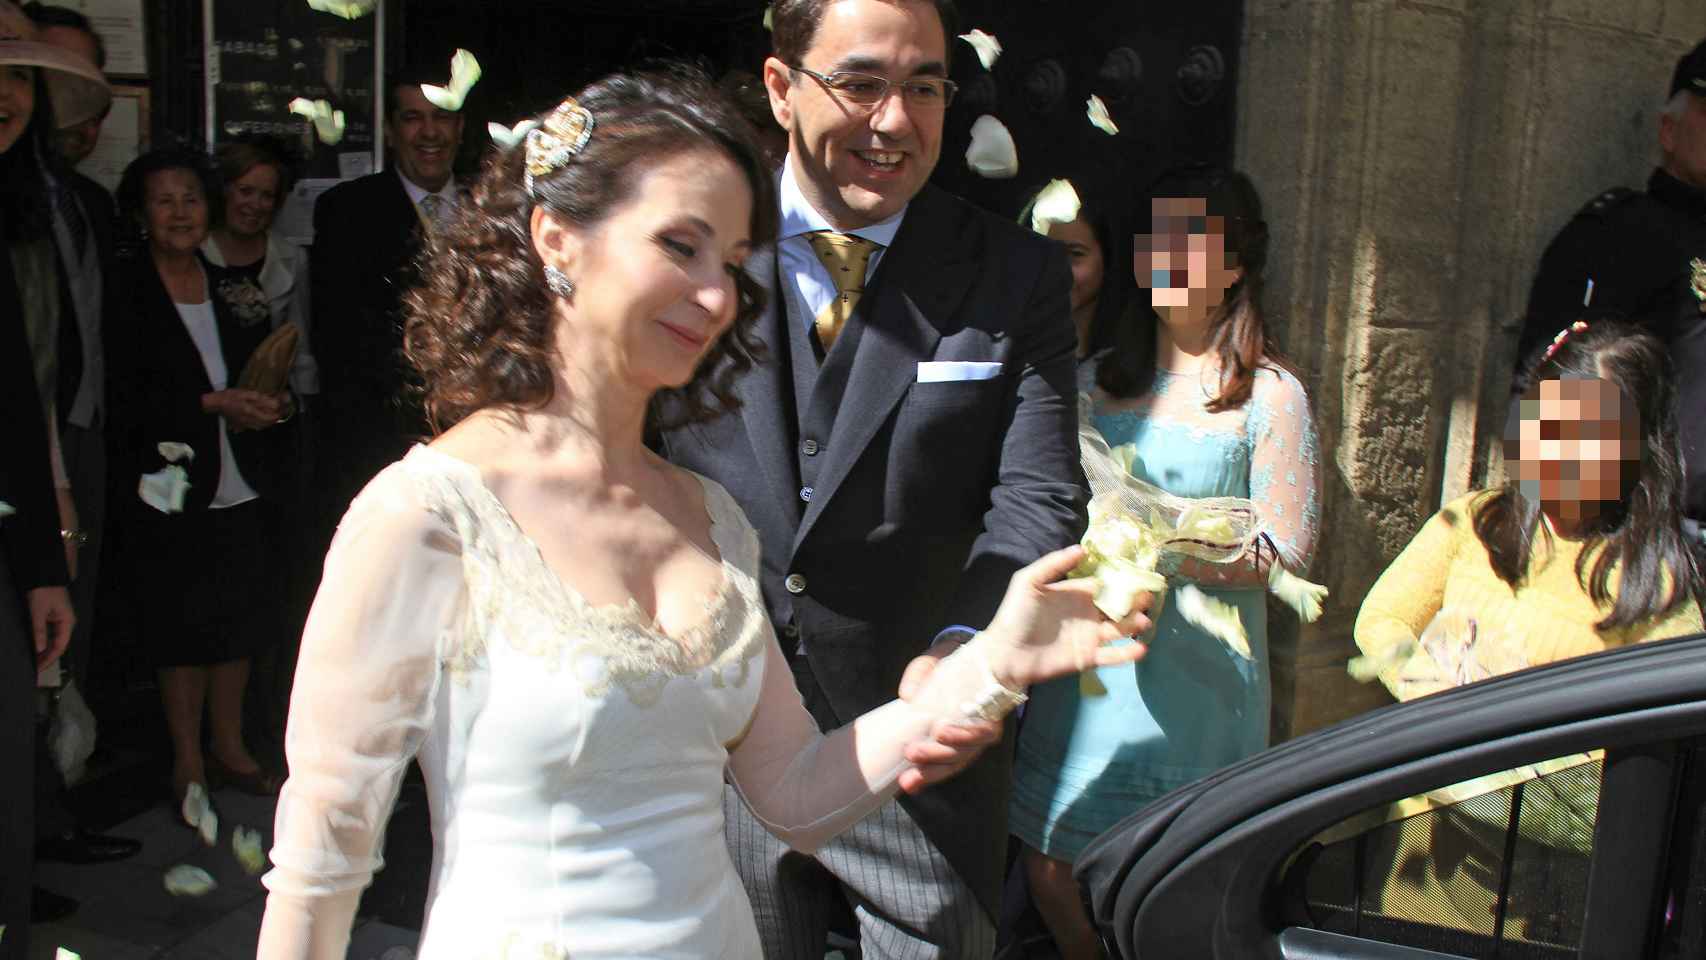 La jueza Alaya cuando renovó sus votos junto a su marido.